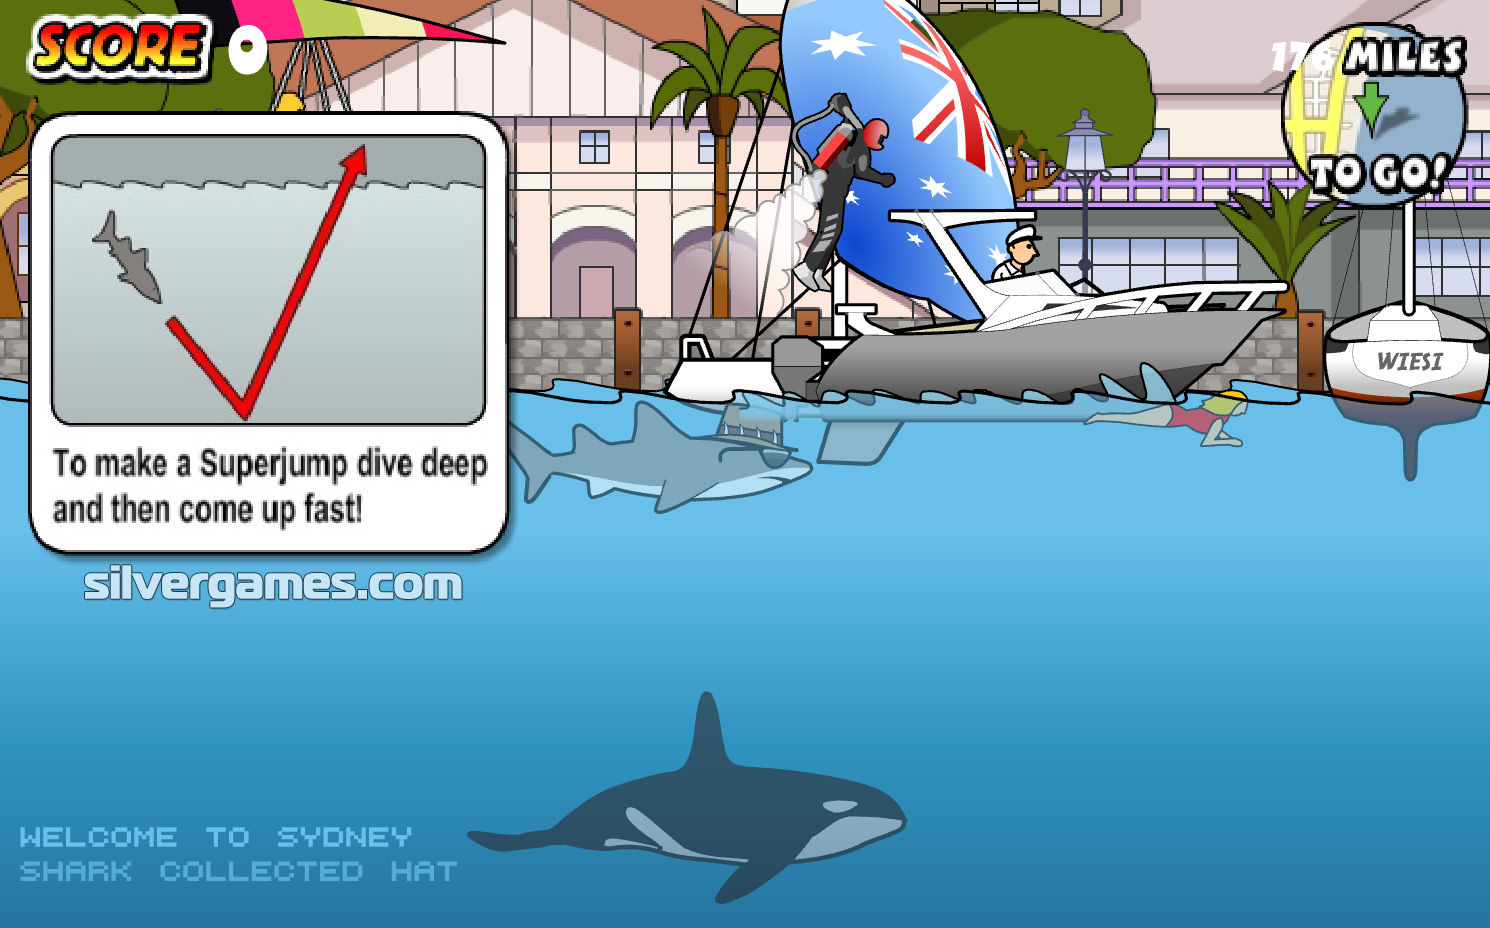 Sydney Shark Flash Game Playthrough 